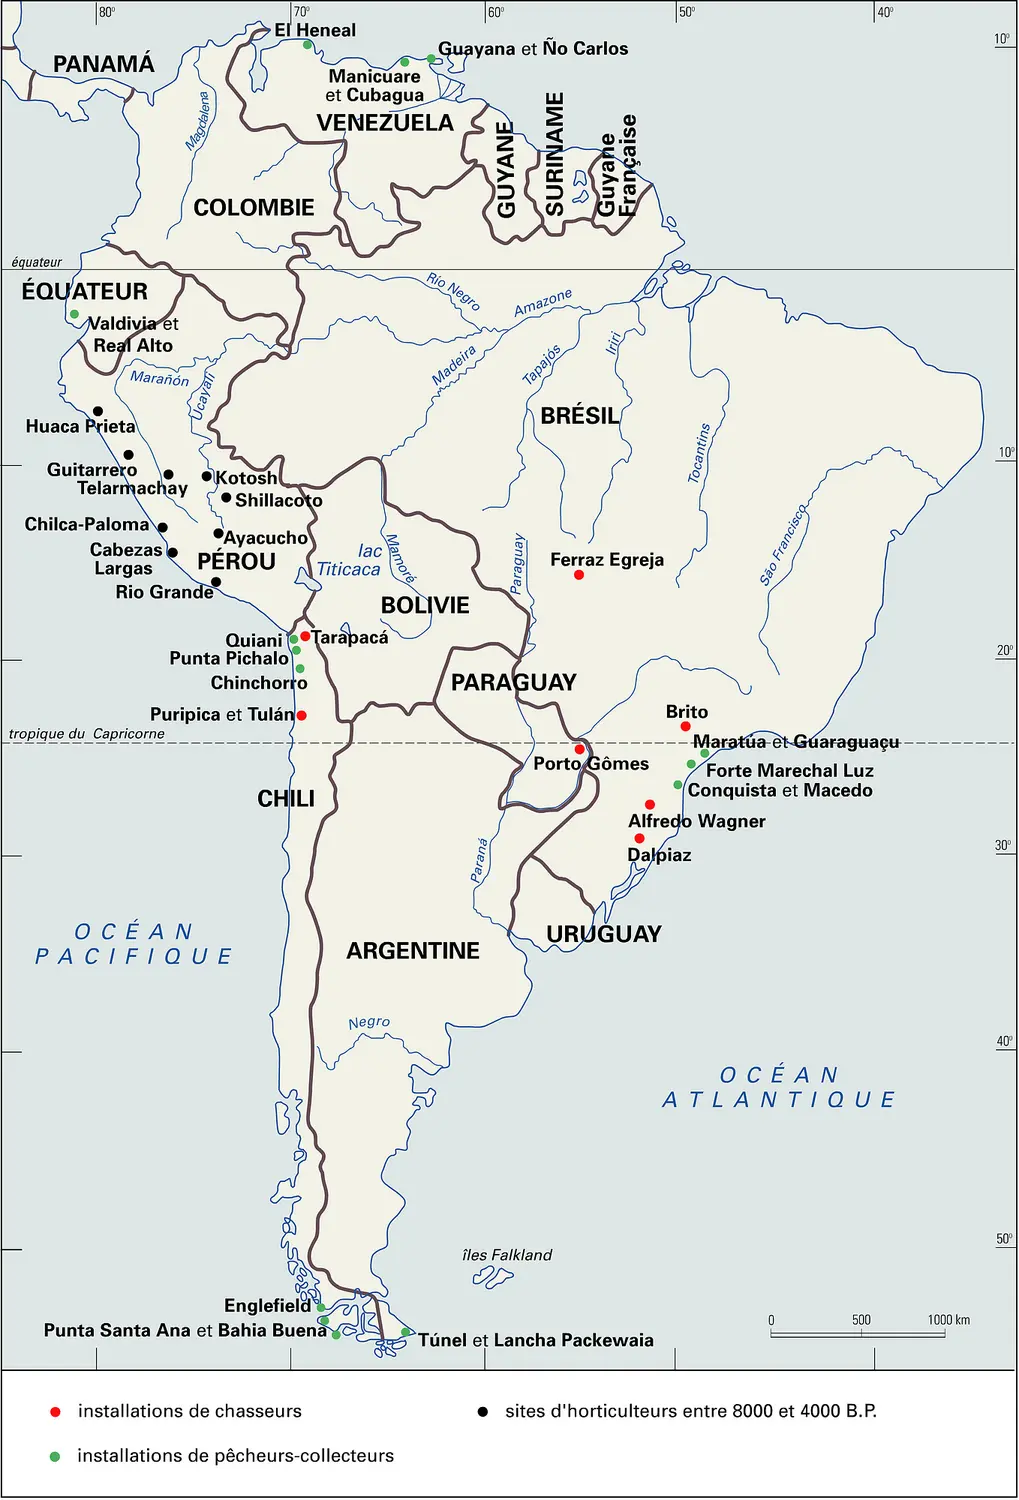 Amérique du Sud : préhistoire à partir de 8000 B.P.